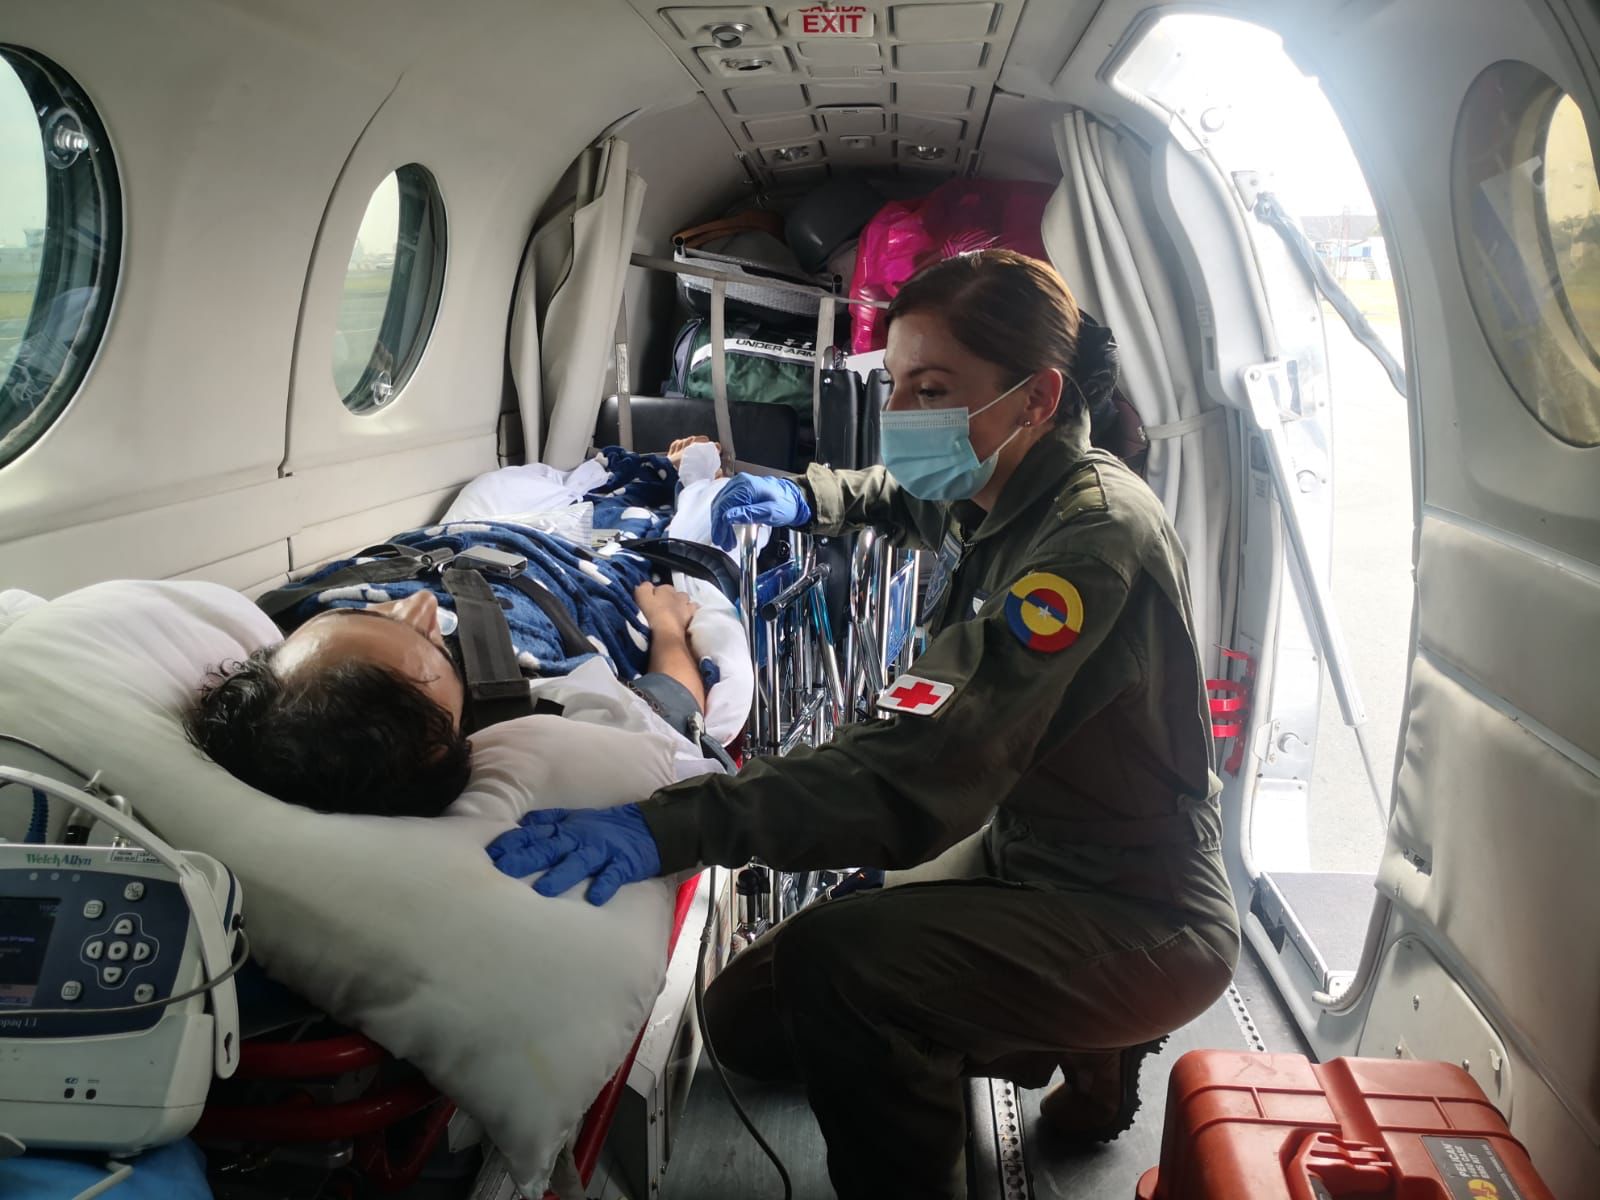 Traslado aeromédico humanitario de Colombiano desde Ecuador fue realizado por la Fuerza Aérea